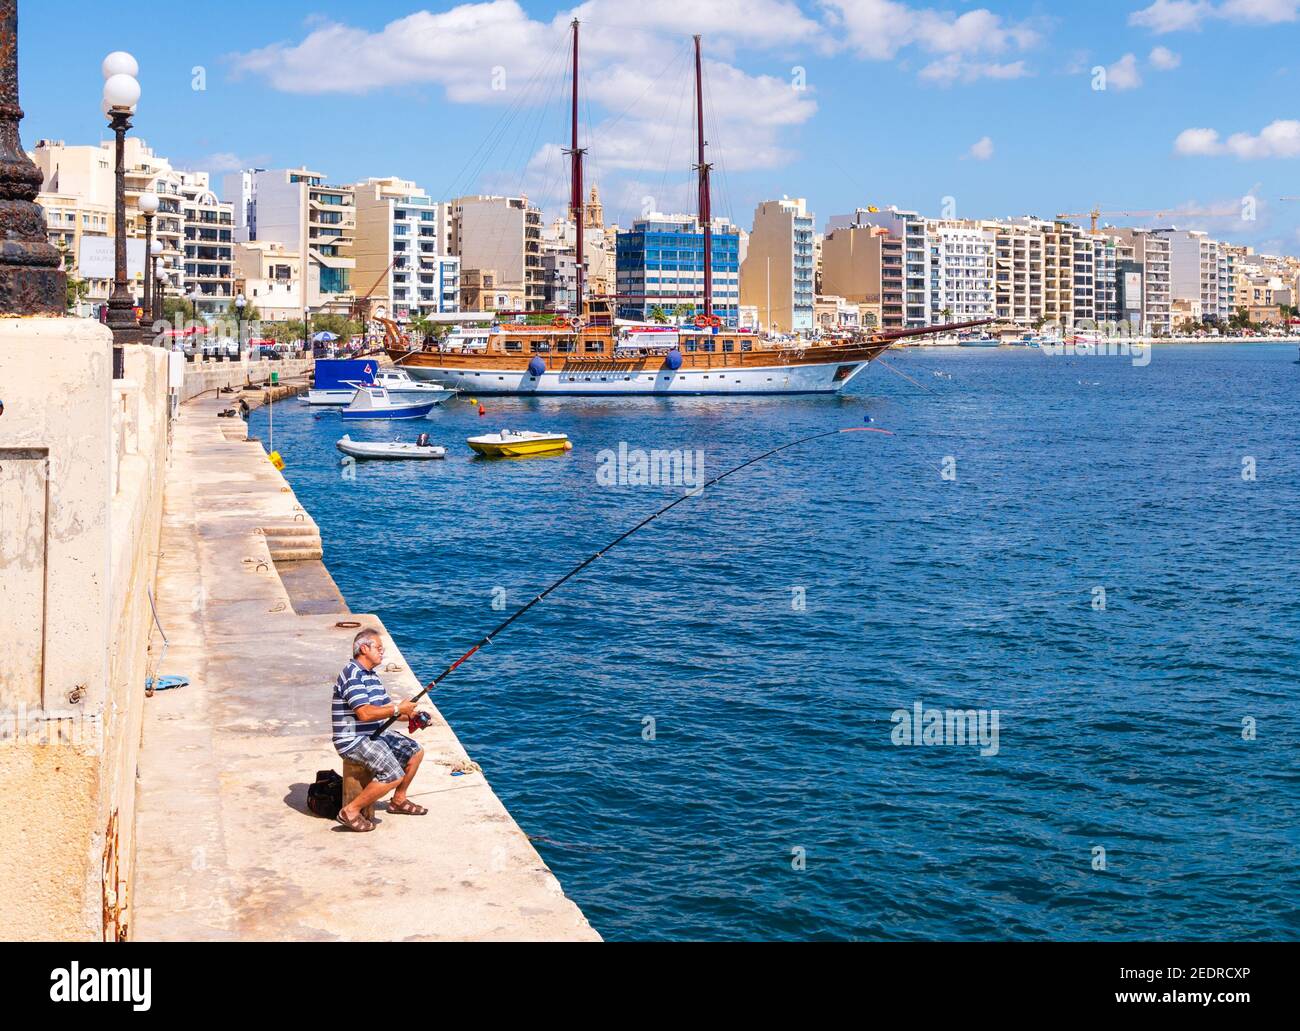 Alter Mann, der auf den nahe gelegenen modernen Apartments und Hotels angeln kann An der Tigné Seafront Sliema Malta Stockfoto